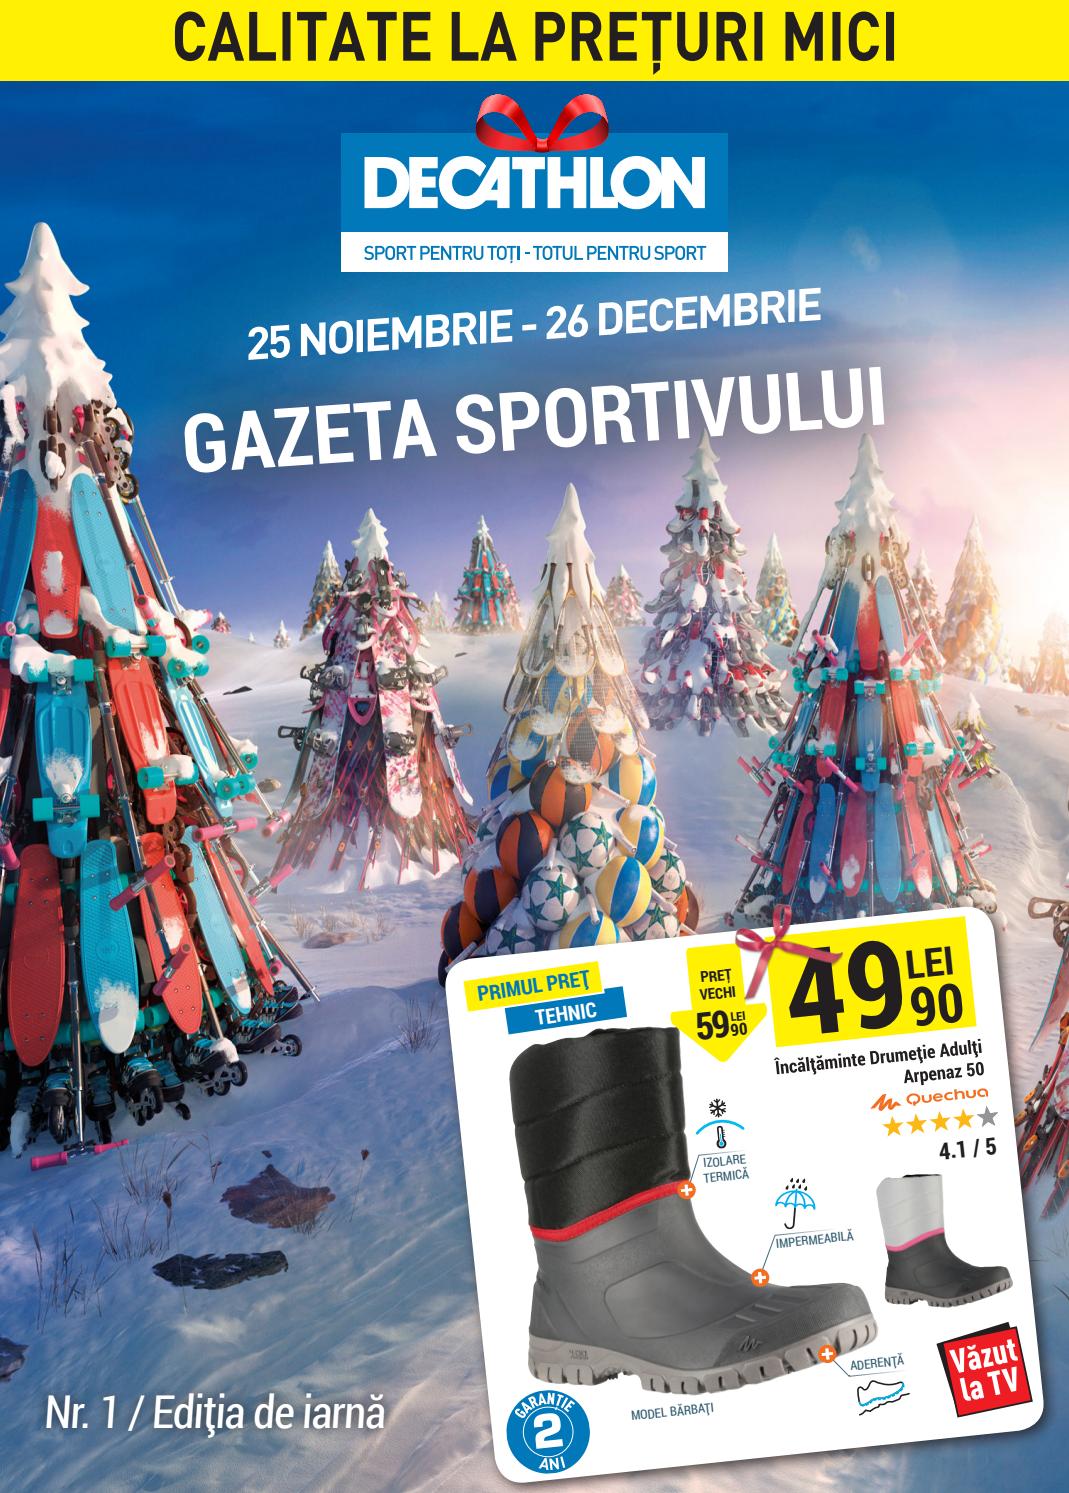 Catalog DECATHLON - Gazeta sportivului! 25 Noiembrie 2016 - 26 Decembrie 2016